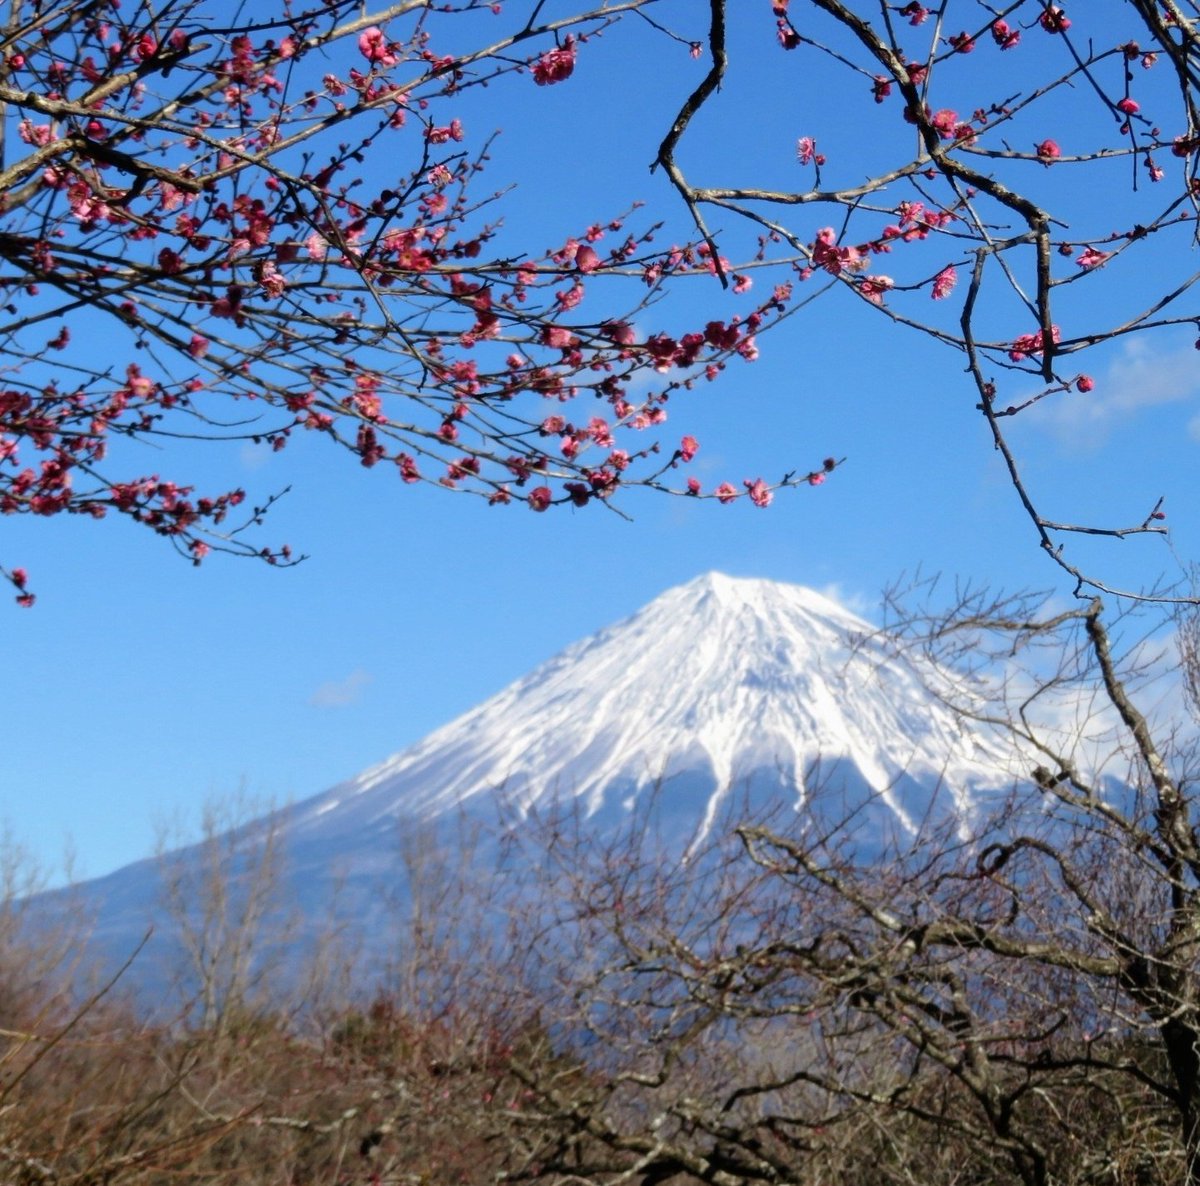 おはようございます😊 富士山と梅の花を 一緒に楽しめる公園🏞 本格的な開花シーズンまで あと少し( ꈍᴗꈍ)♪♪♪ 今週も宜しくお願いします💗